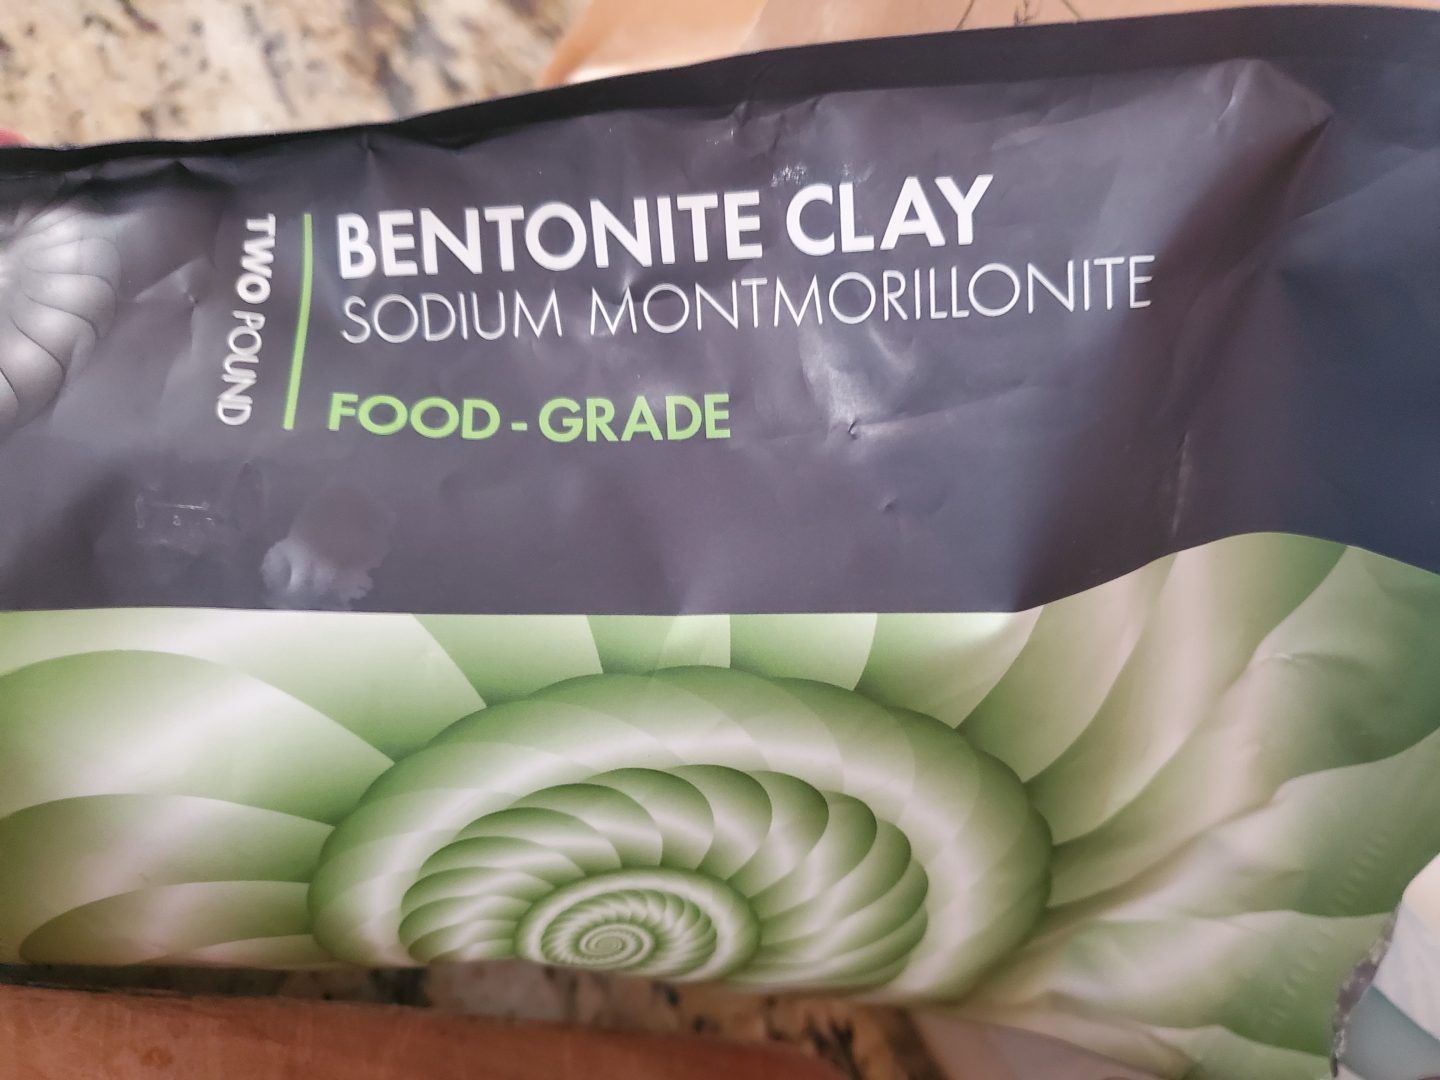 bentonite clay for making homemade deodorant.